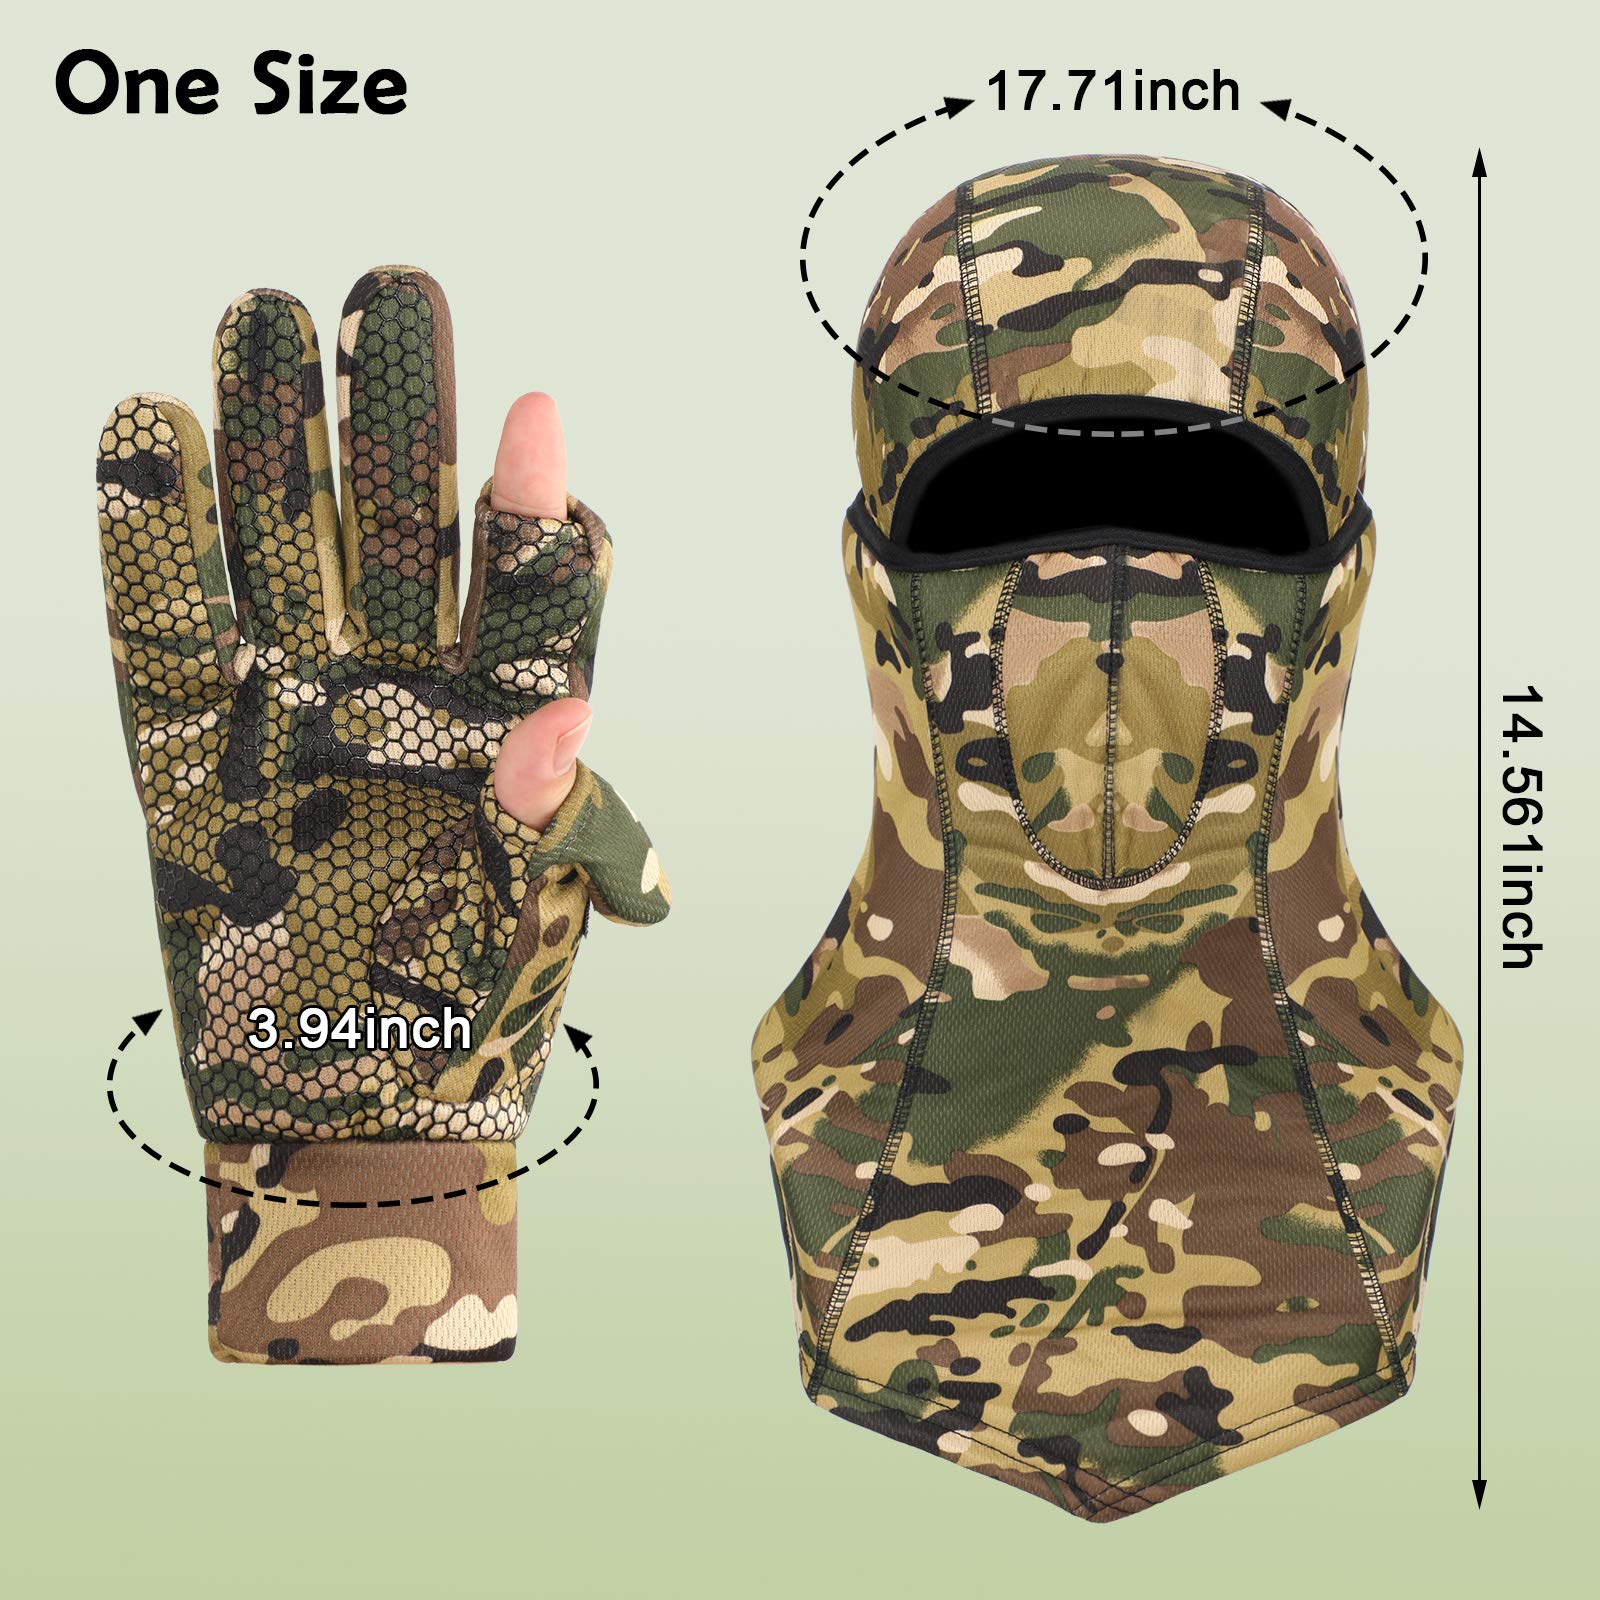 Camo Hunting Gloves for Men Full Face Cover Hunting Mitten Balaclava Anti Slip Full Finger Fingerless Mitten Wind Resistant